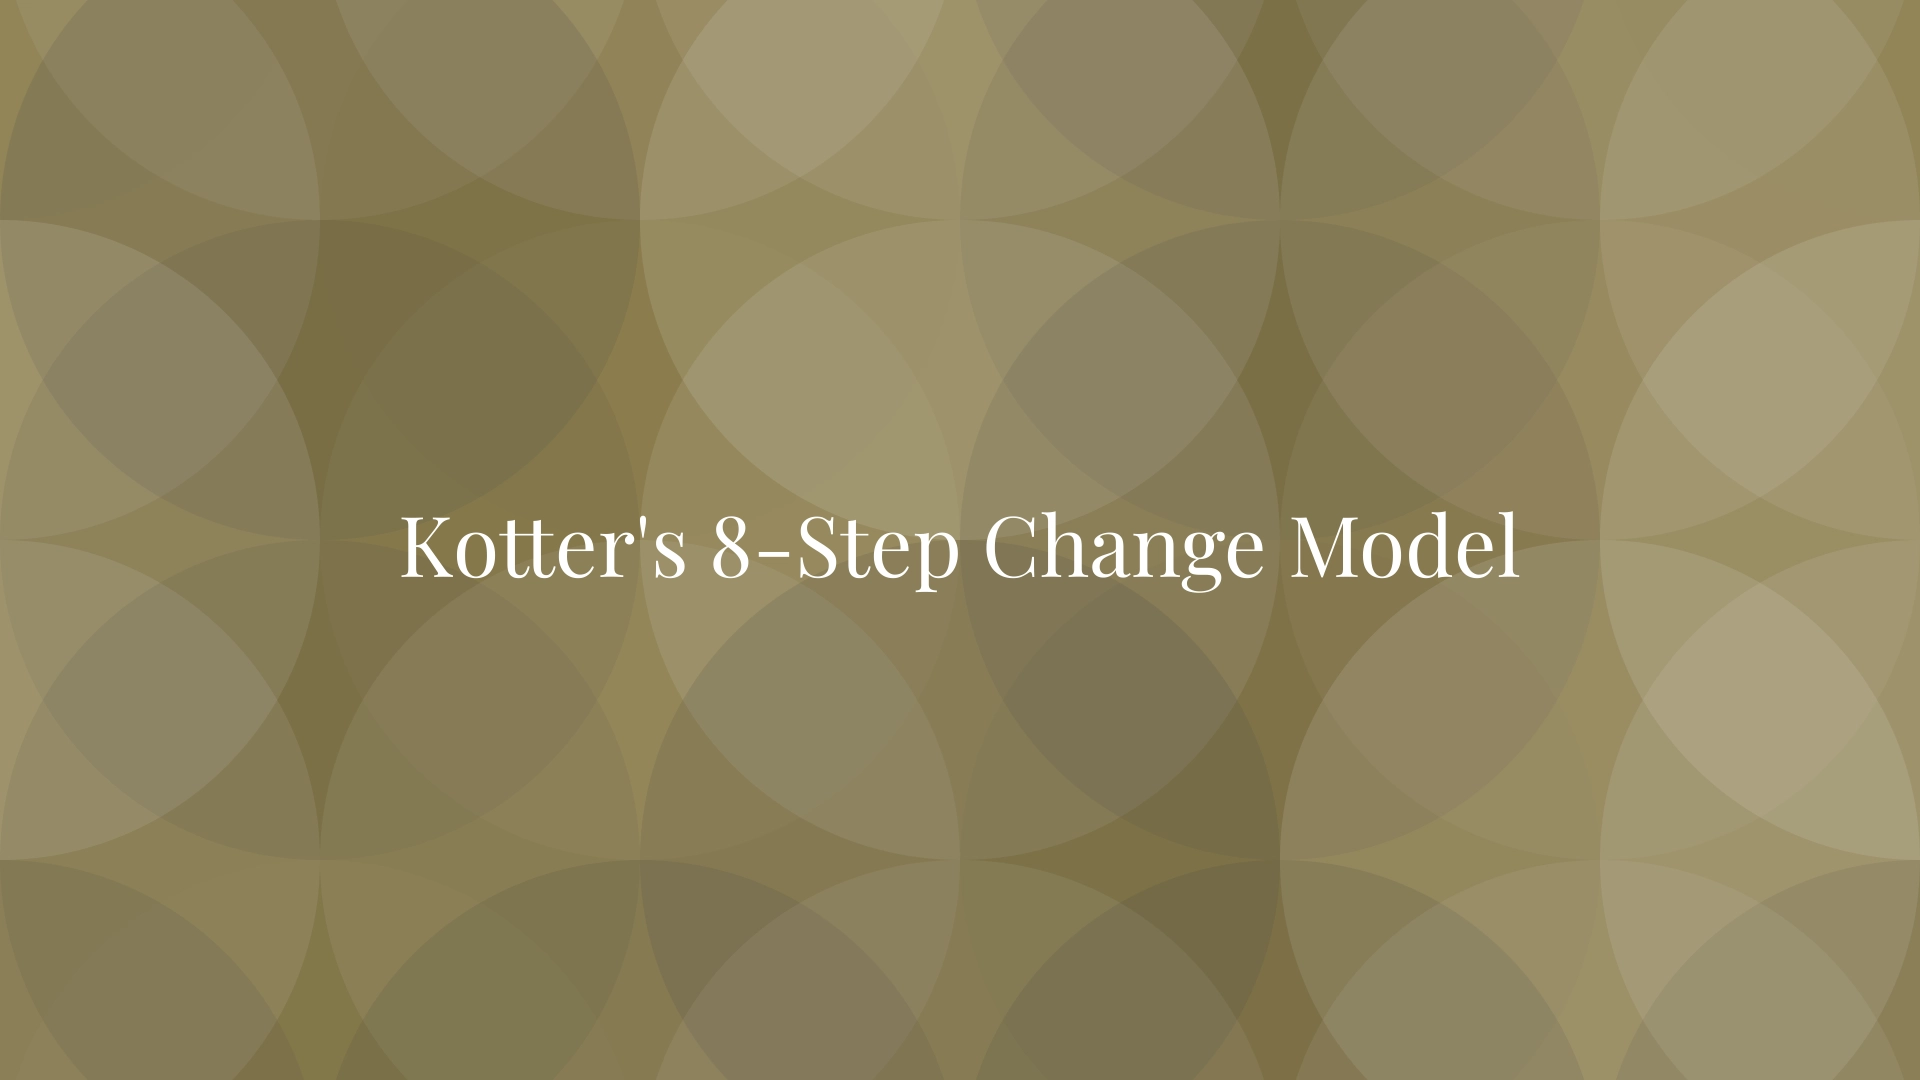 El modelo de 8 pasos de Kotter para liderar el cambio organizacional